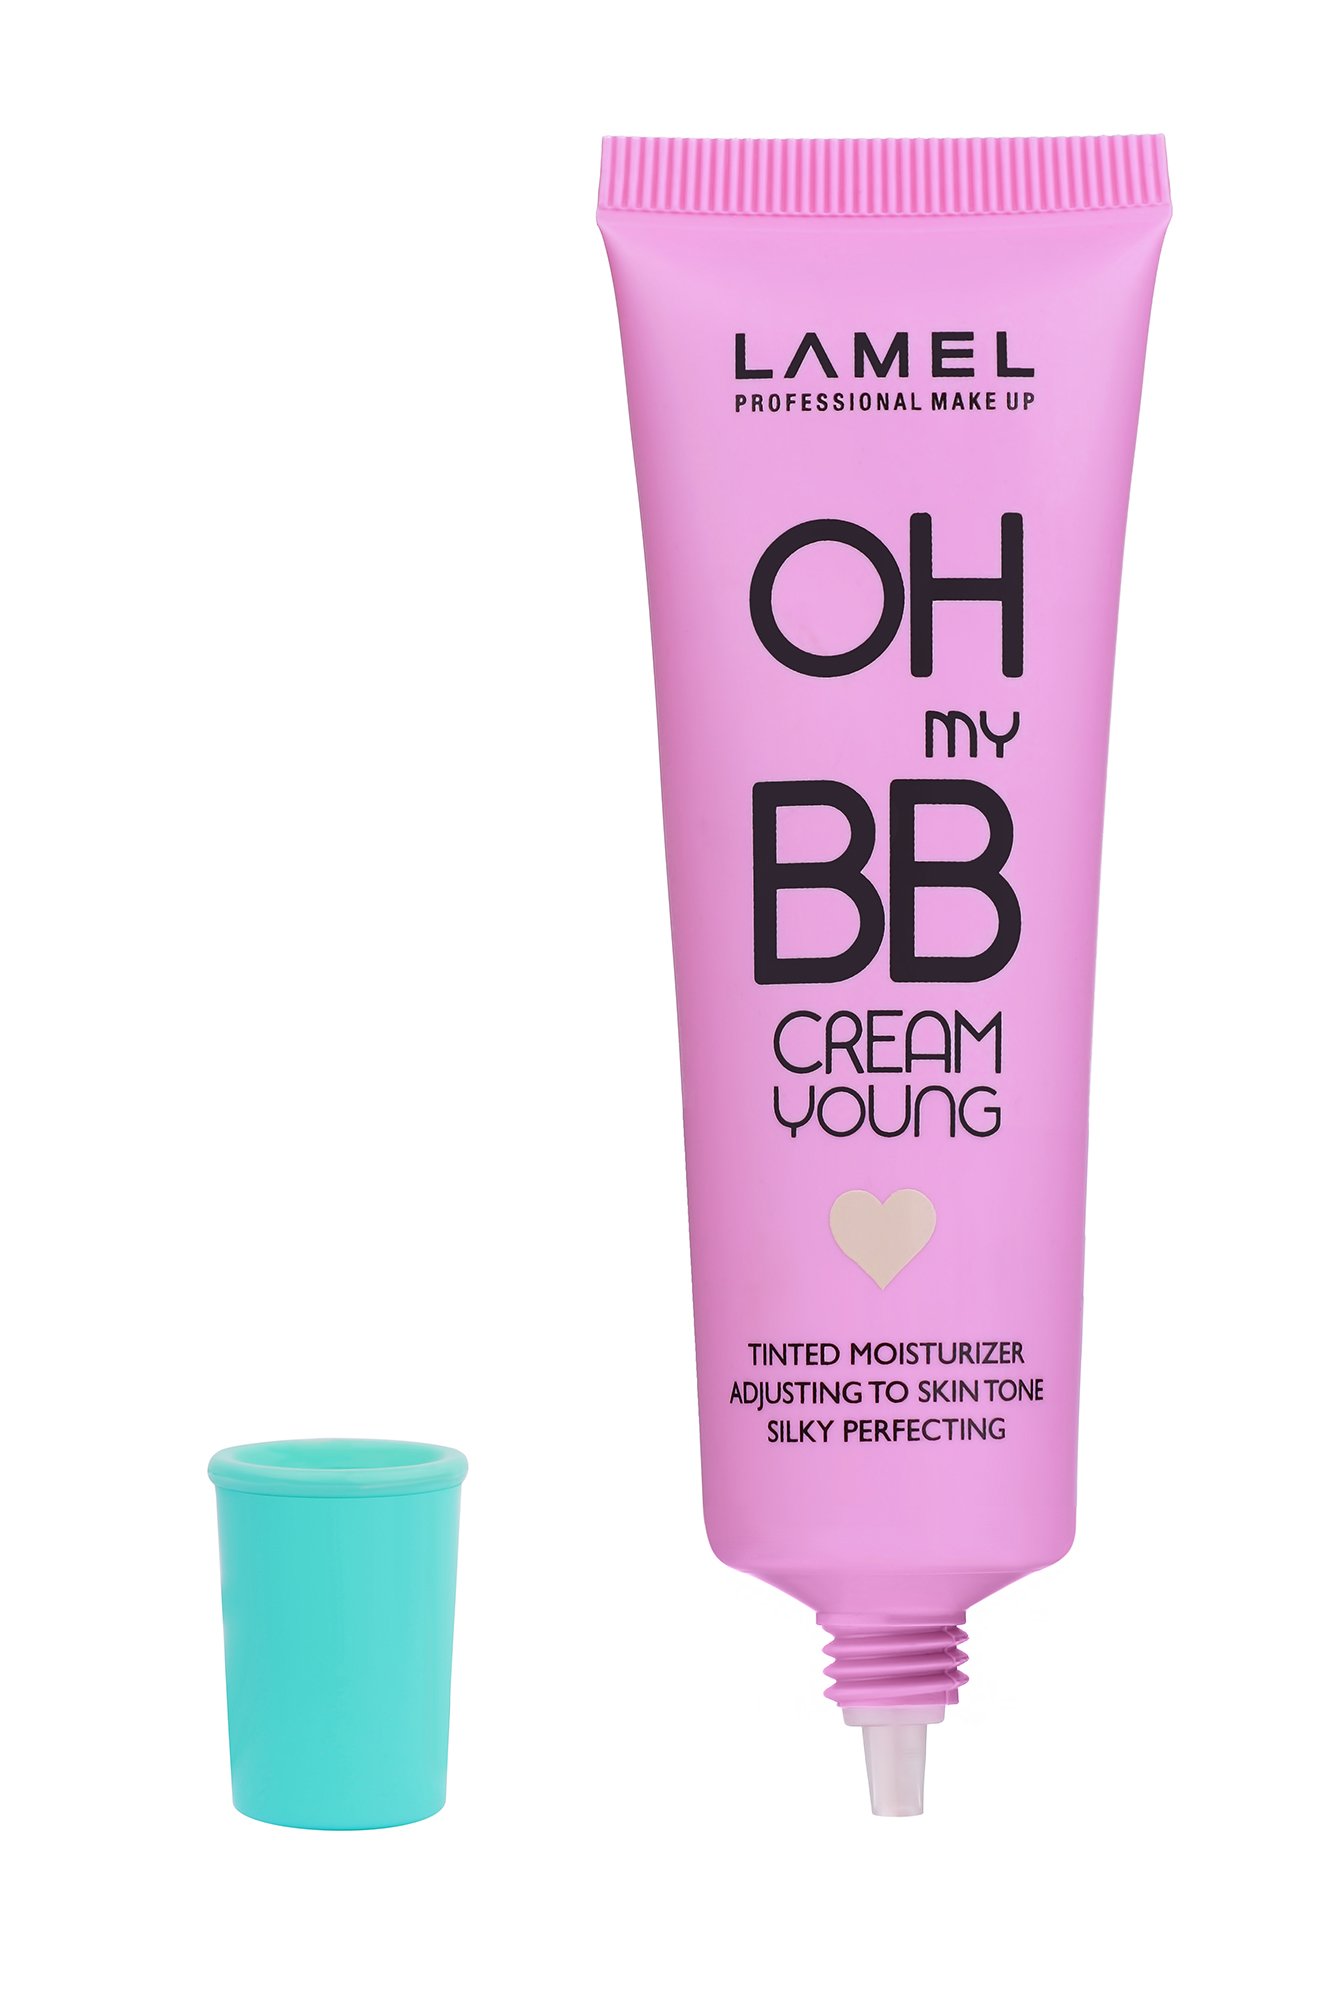 Тональный крем OhMy BB Cream т.403 warm beige 30 мл LAMEL Professional